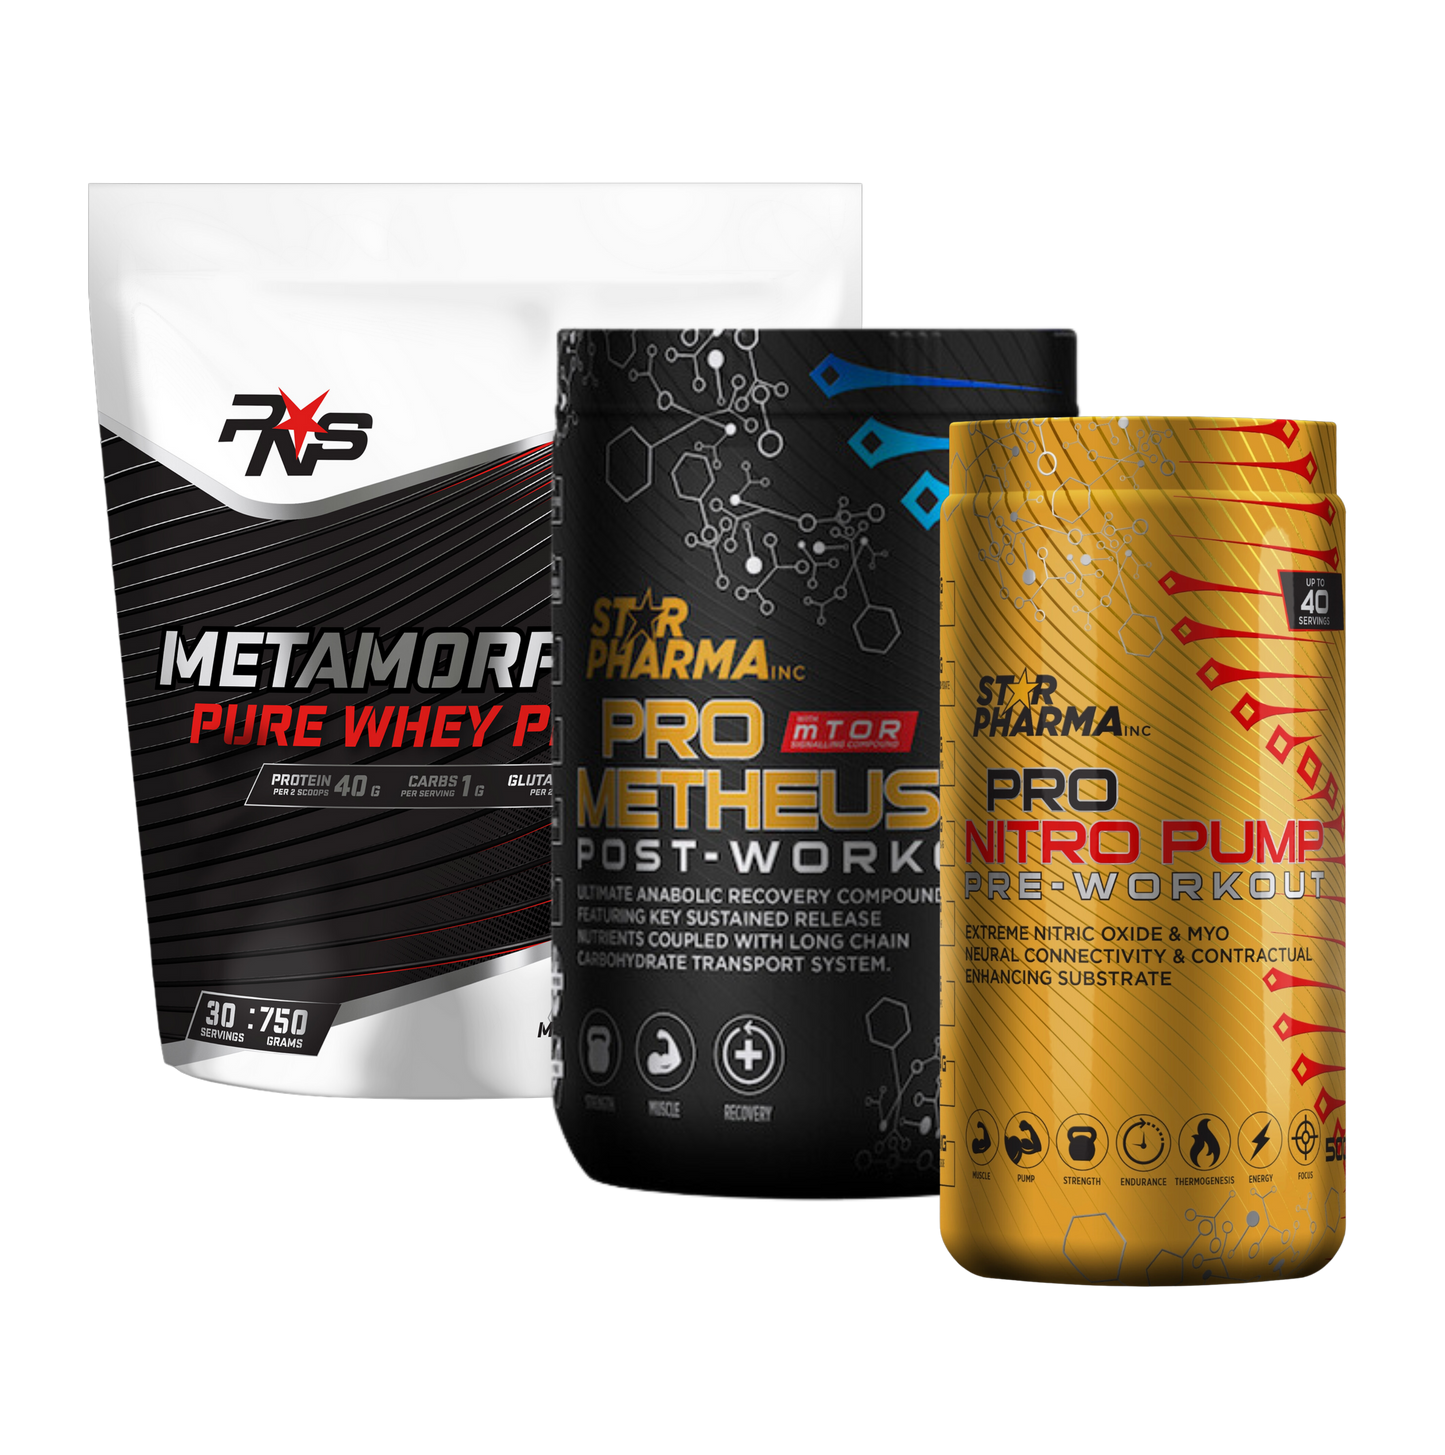 Metamorphosis Whey Protein + Pro Metheus Post-Workout + Pro Nitro Pump Pre-Workout